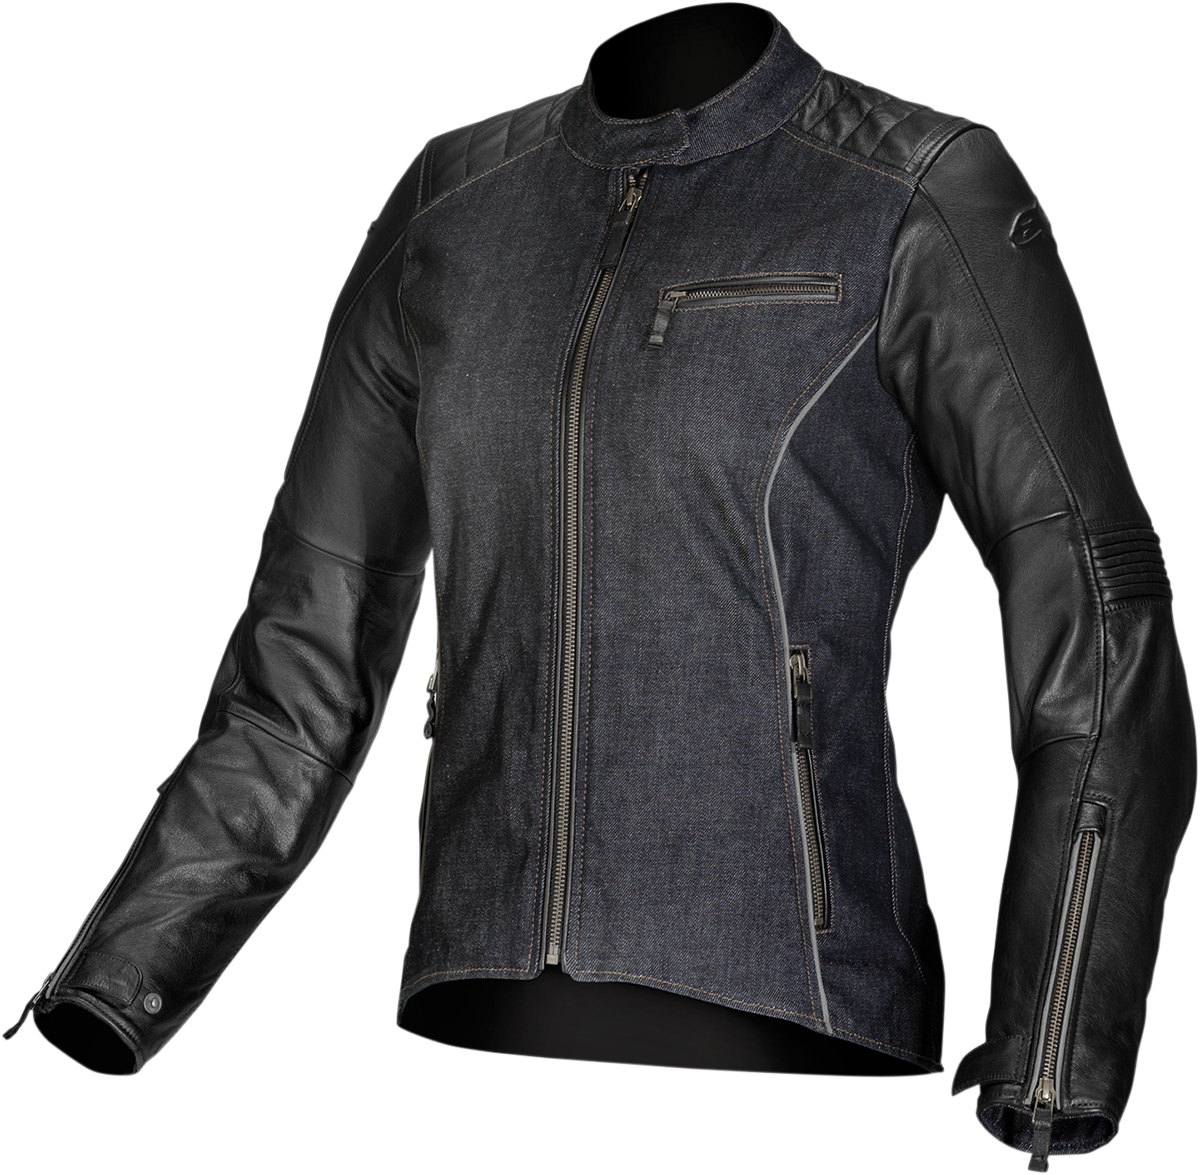 ALPINESTARS Stella Renee Leather Jacket - Black - US 2 / EU 38 3318013-10-38